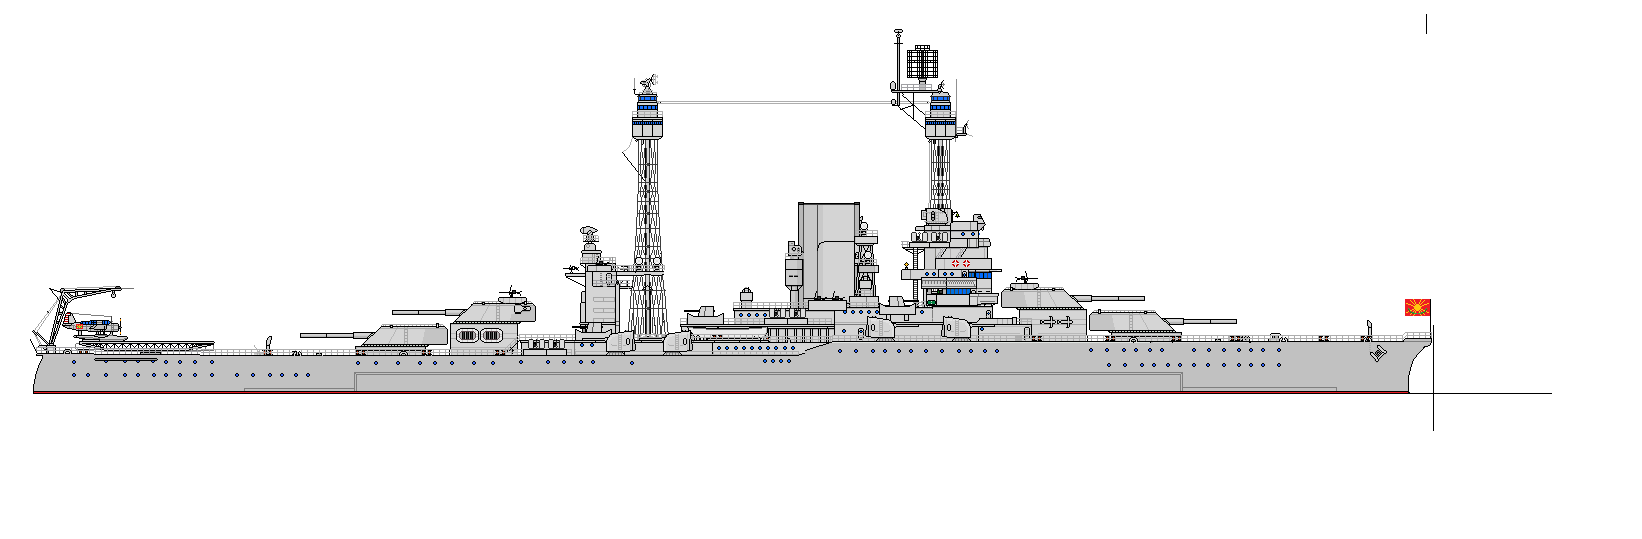 Линейные крейсера класса "Independencia" - ВМФ Тихоокеанской Конфедерации